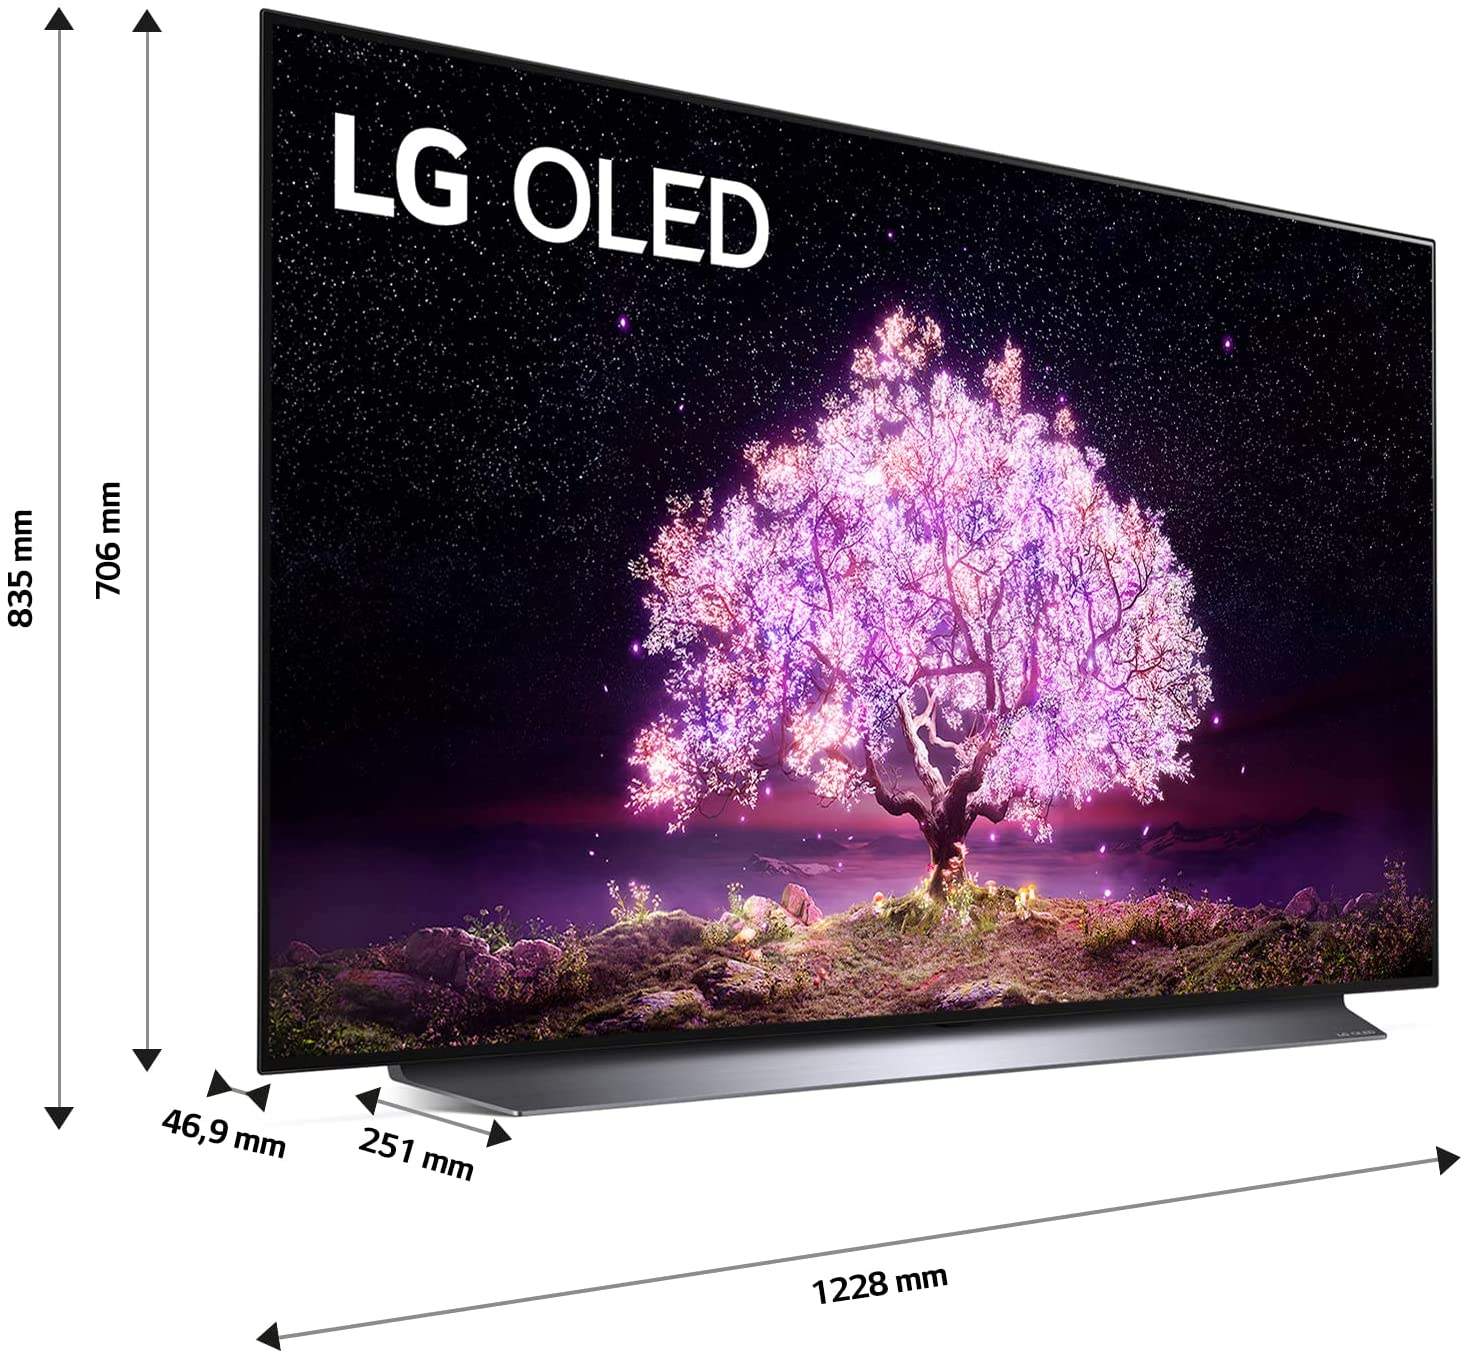 LG OLED 55" Smart TV